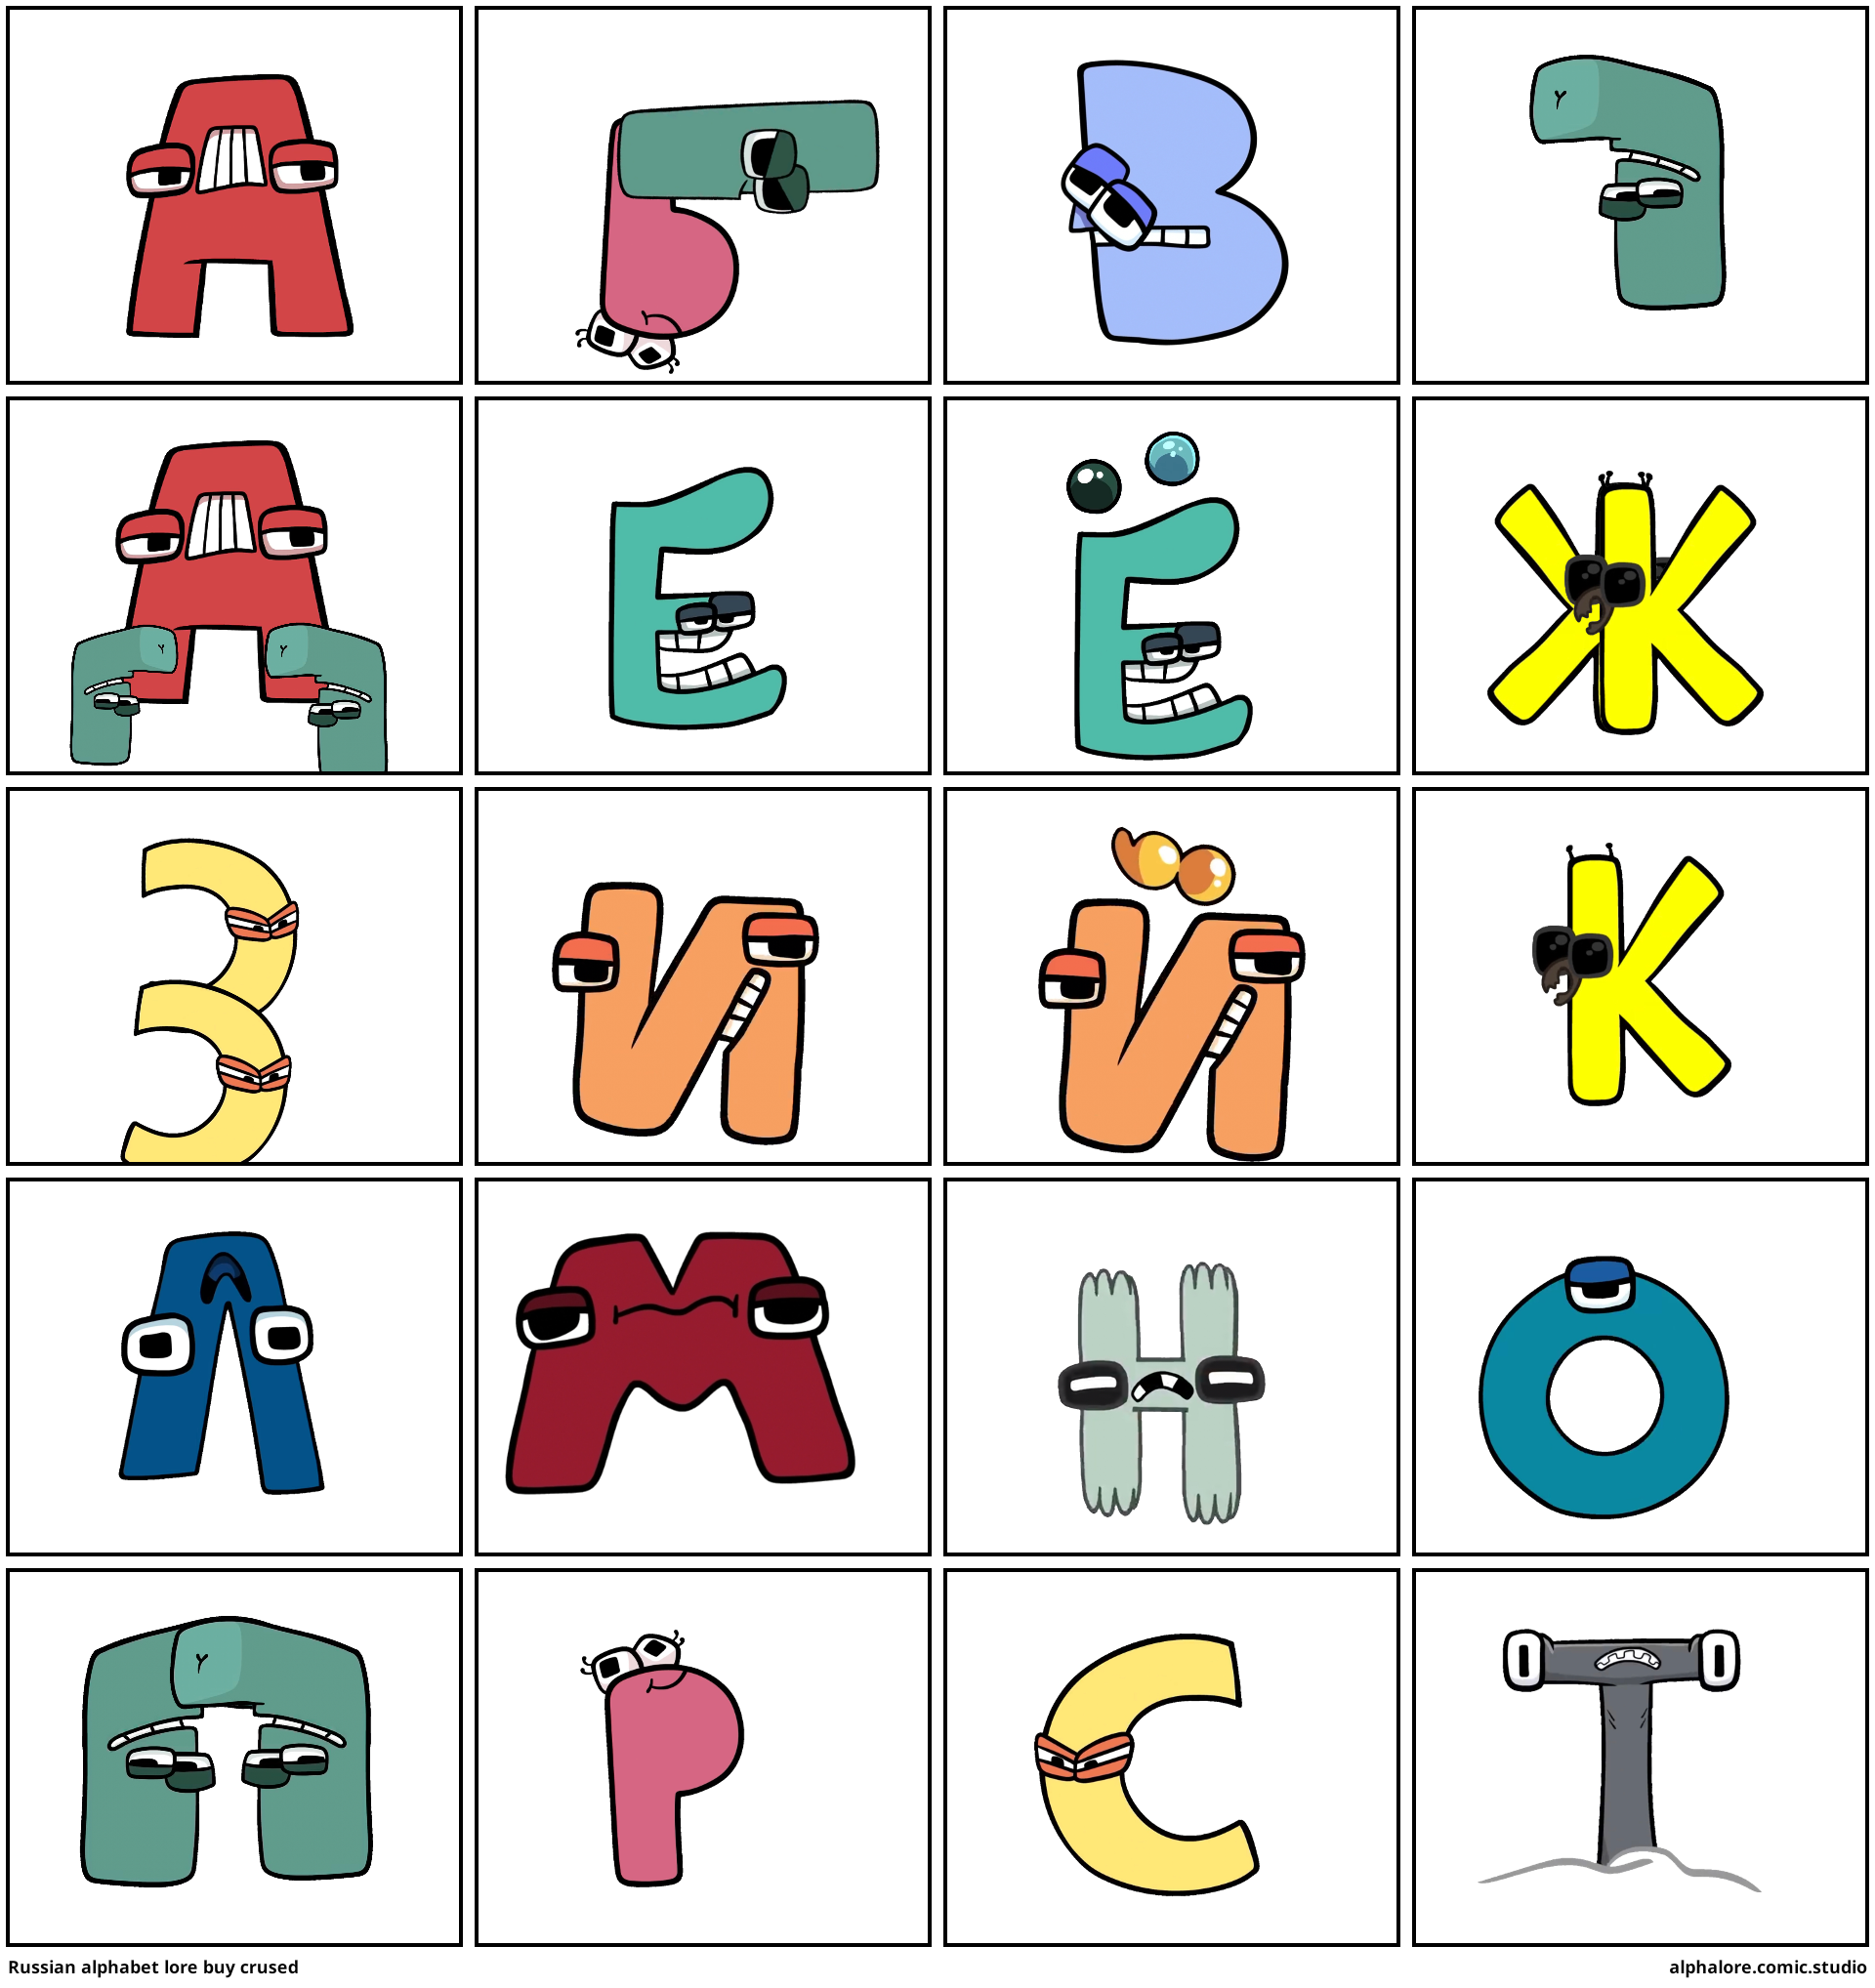 User blog:Krisdom15/Z, Unofficial Alphabet Lore Wiki